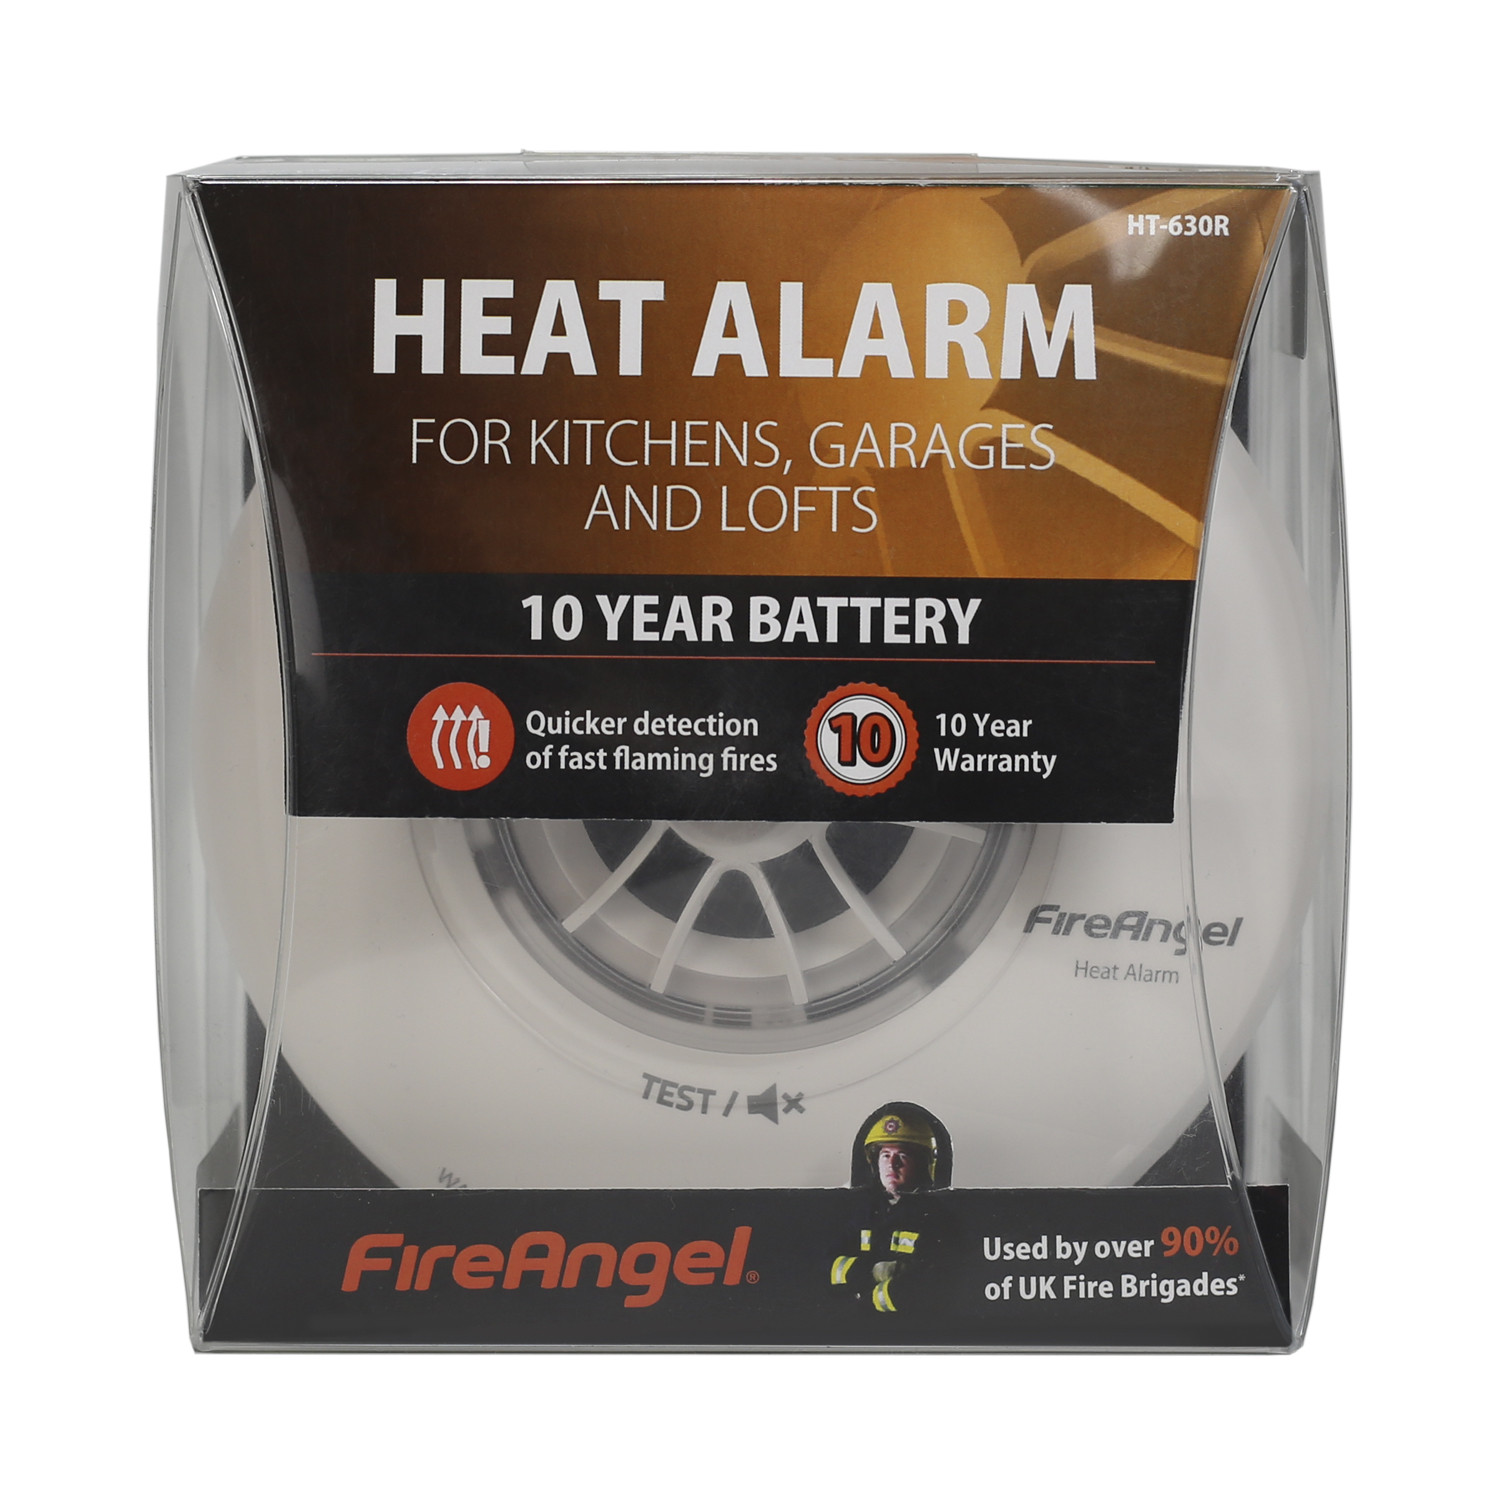 FireAngel 10 Year Battery Heat Alarm Image 1